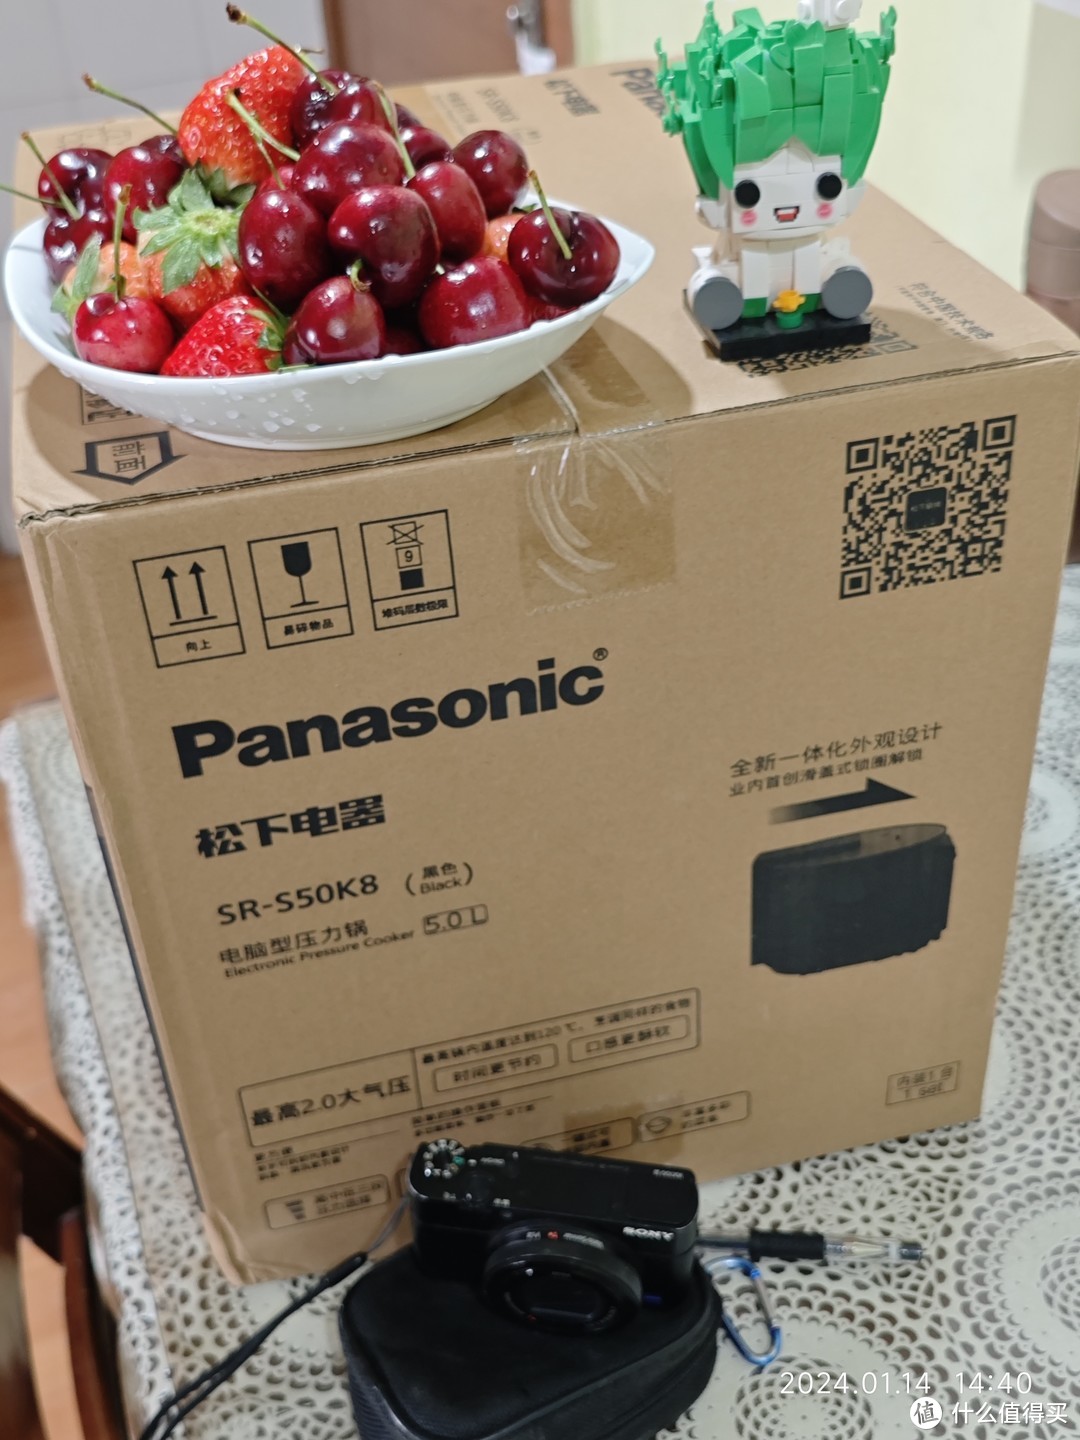 箱子角落里是 黑卡的相机，也是日本带回的，只是为了对比体积